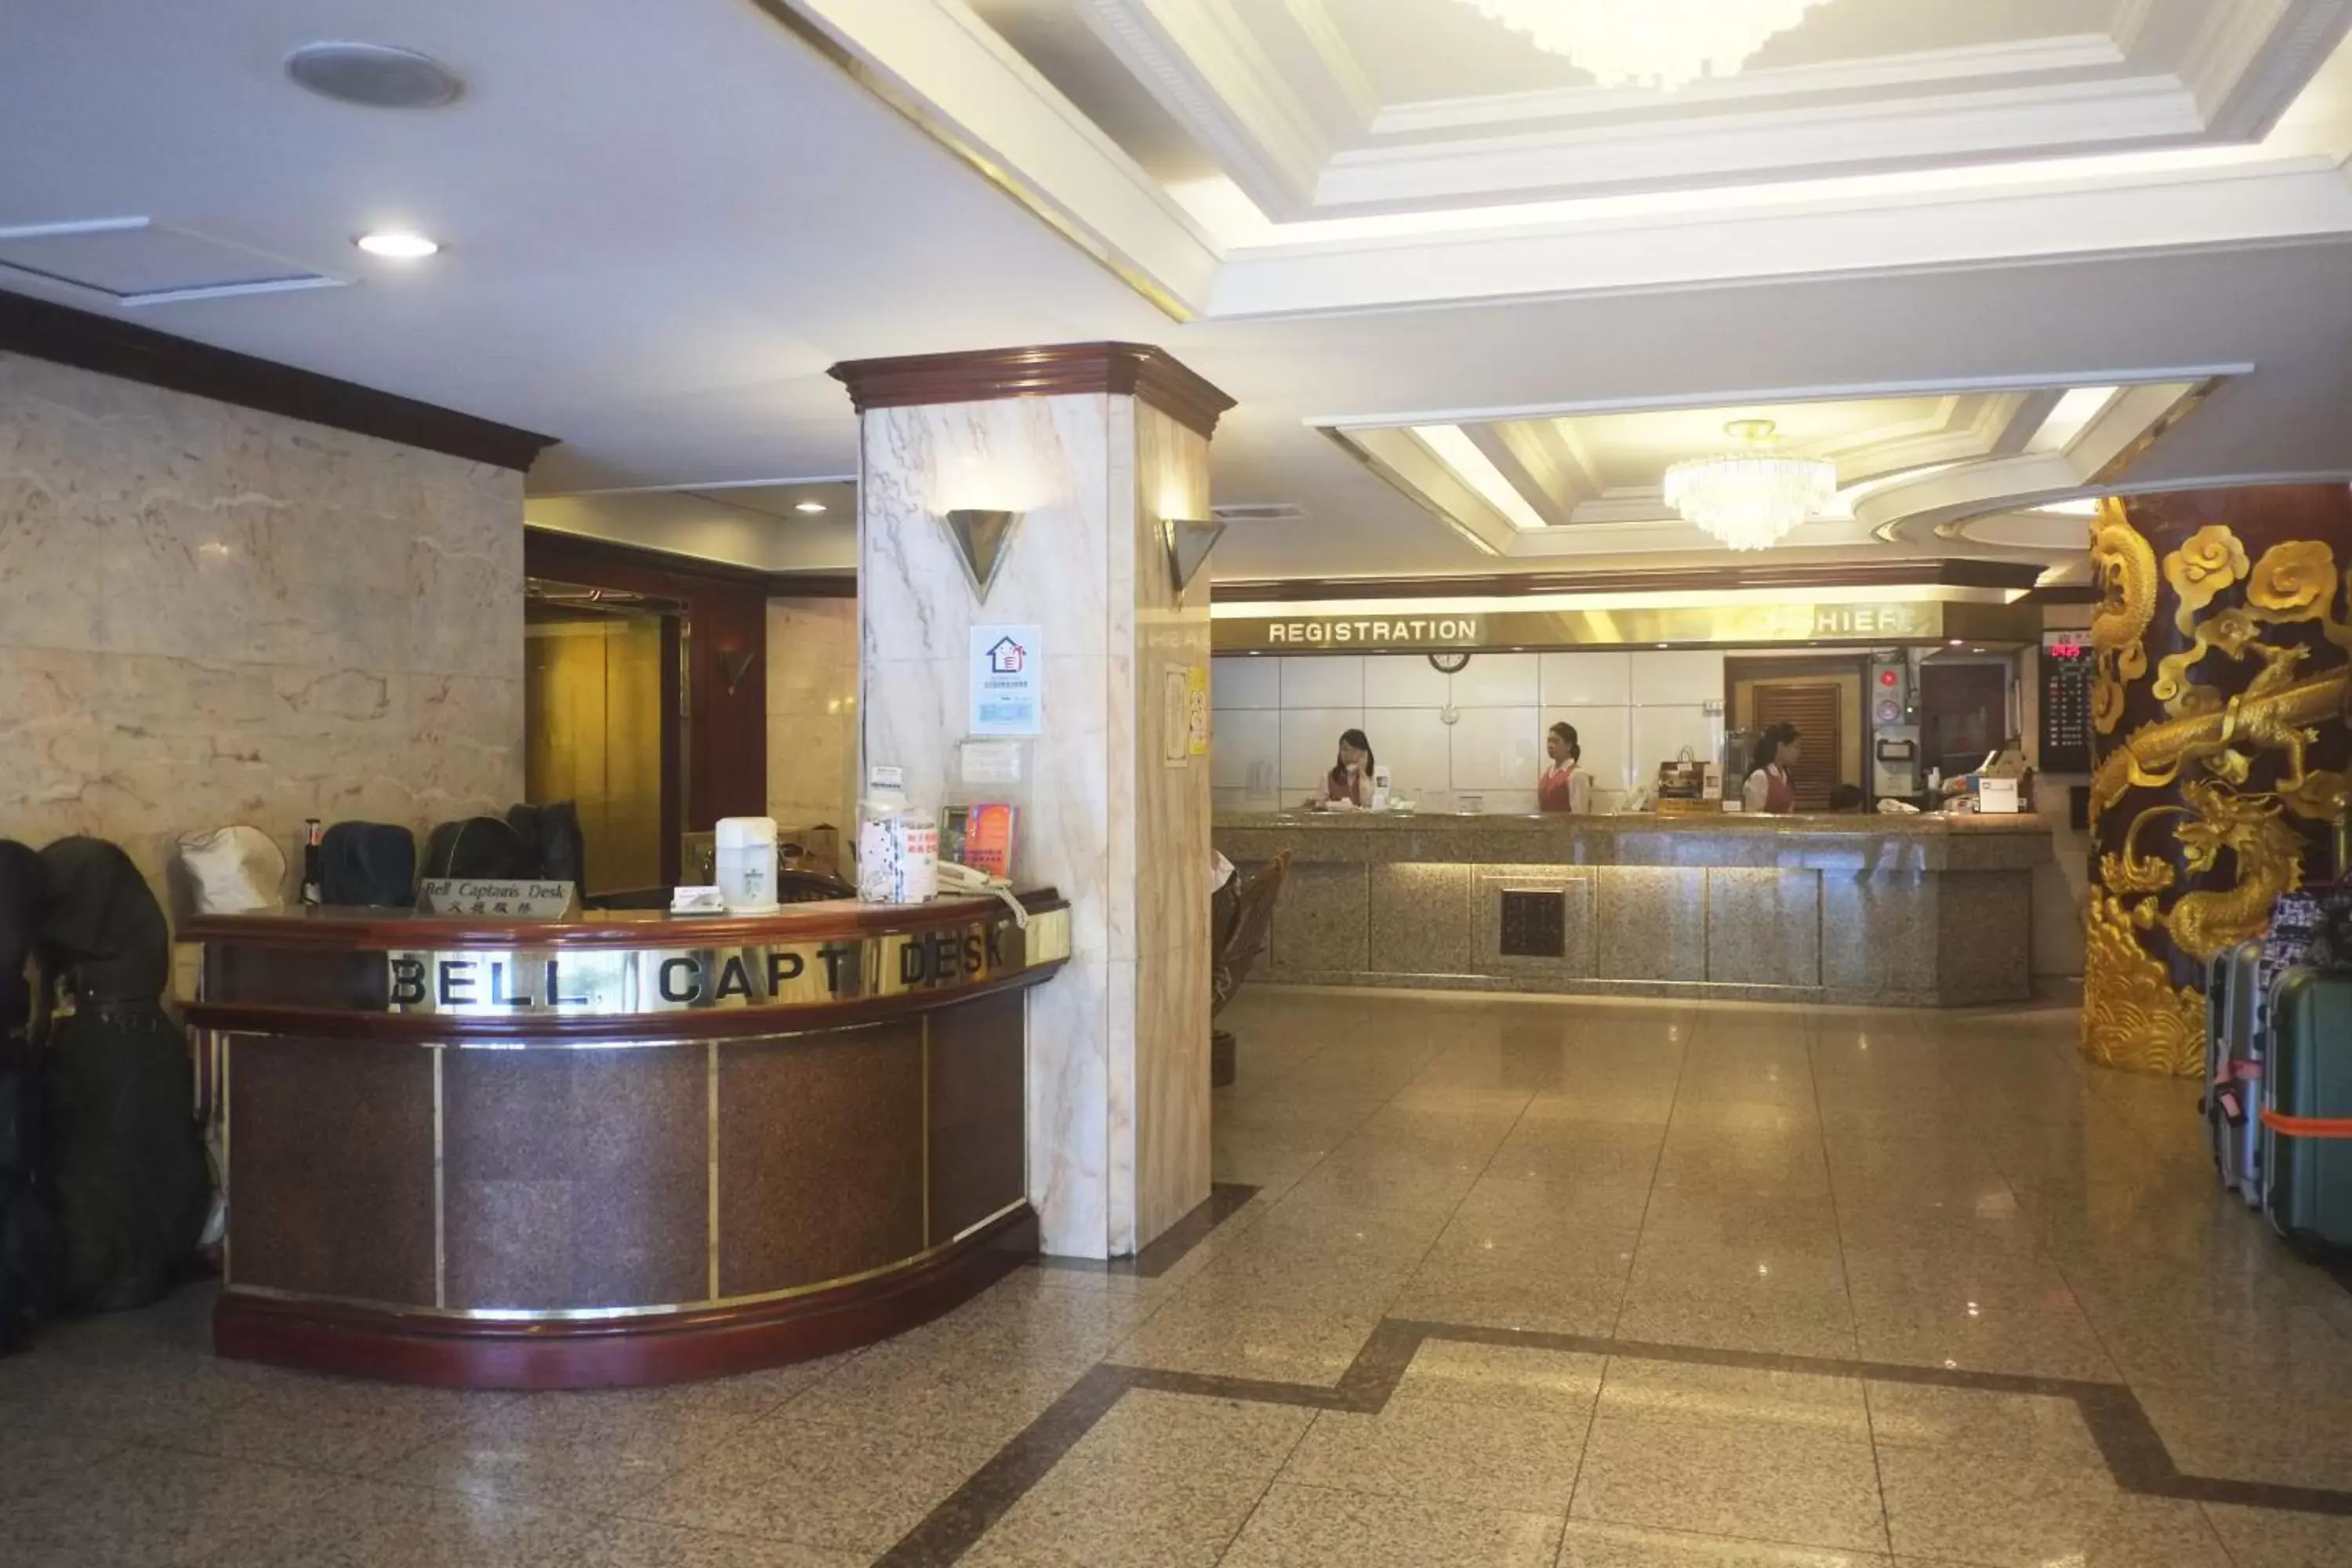 Lobby or reception, Lobby/Reception in Emperor Hotel